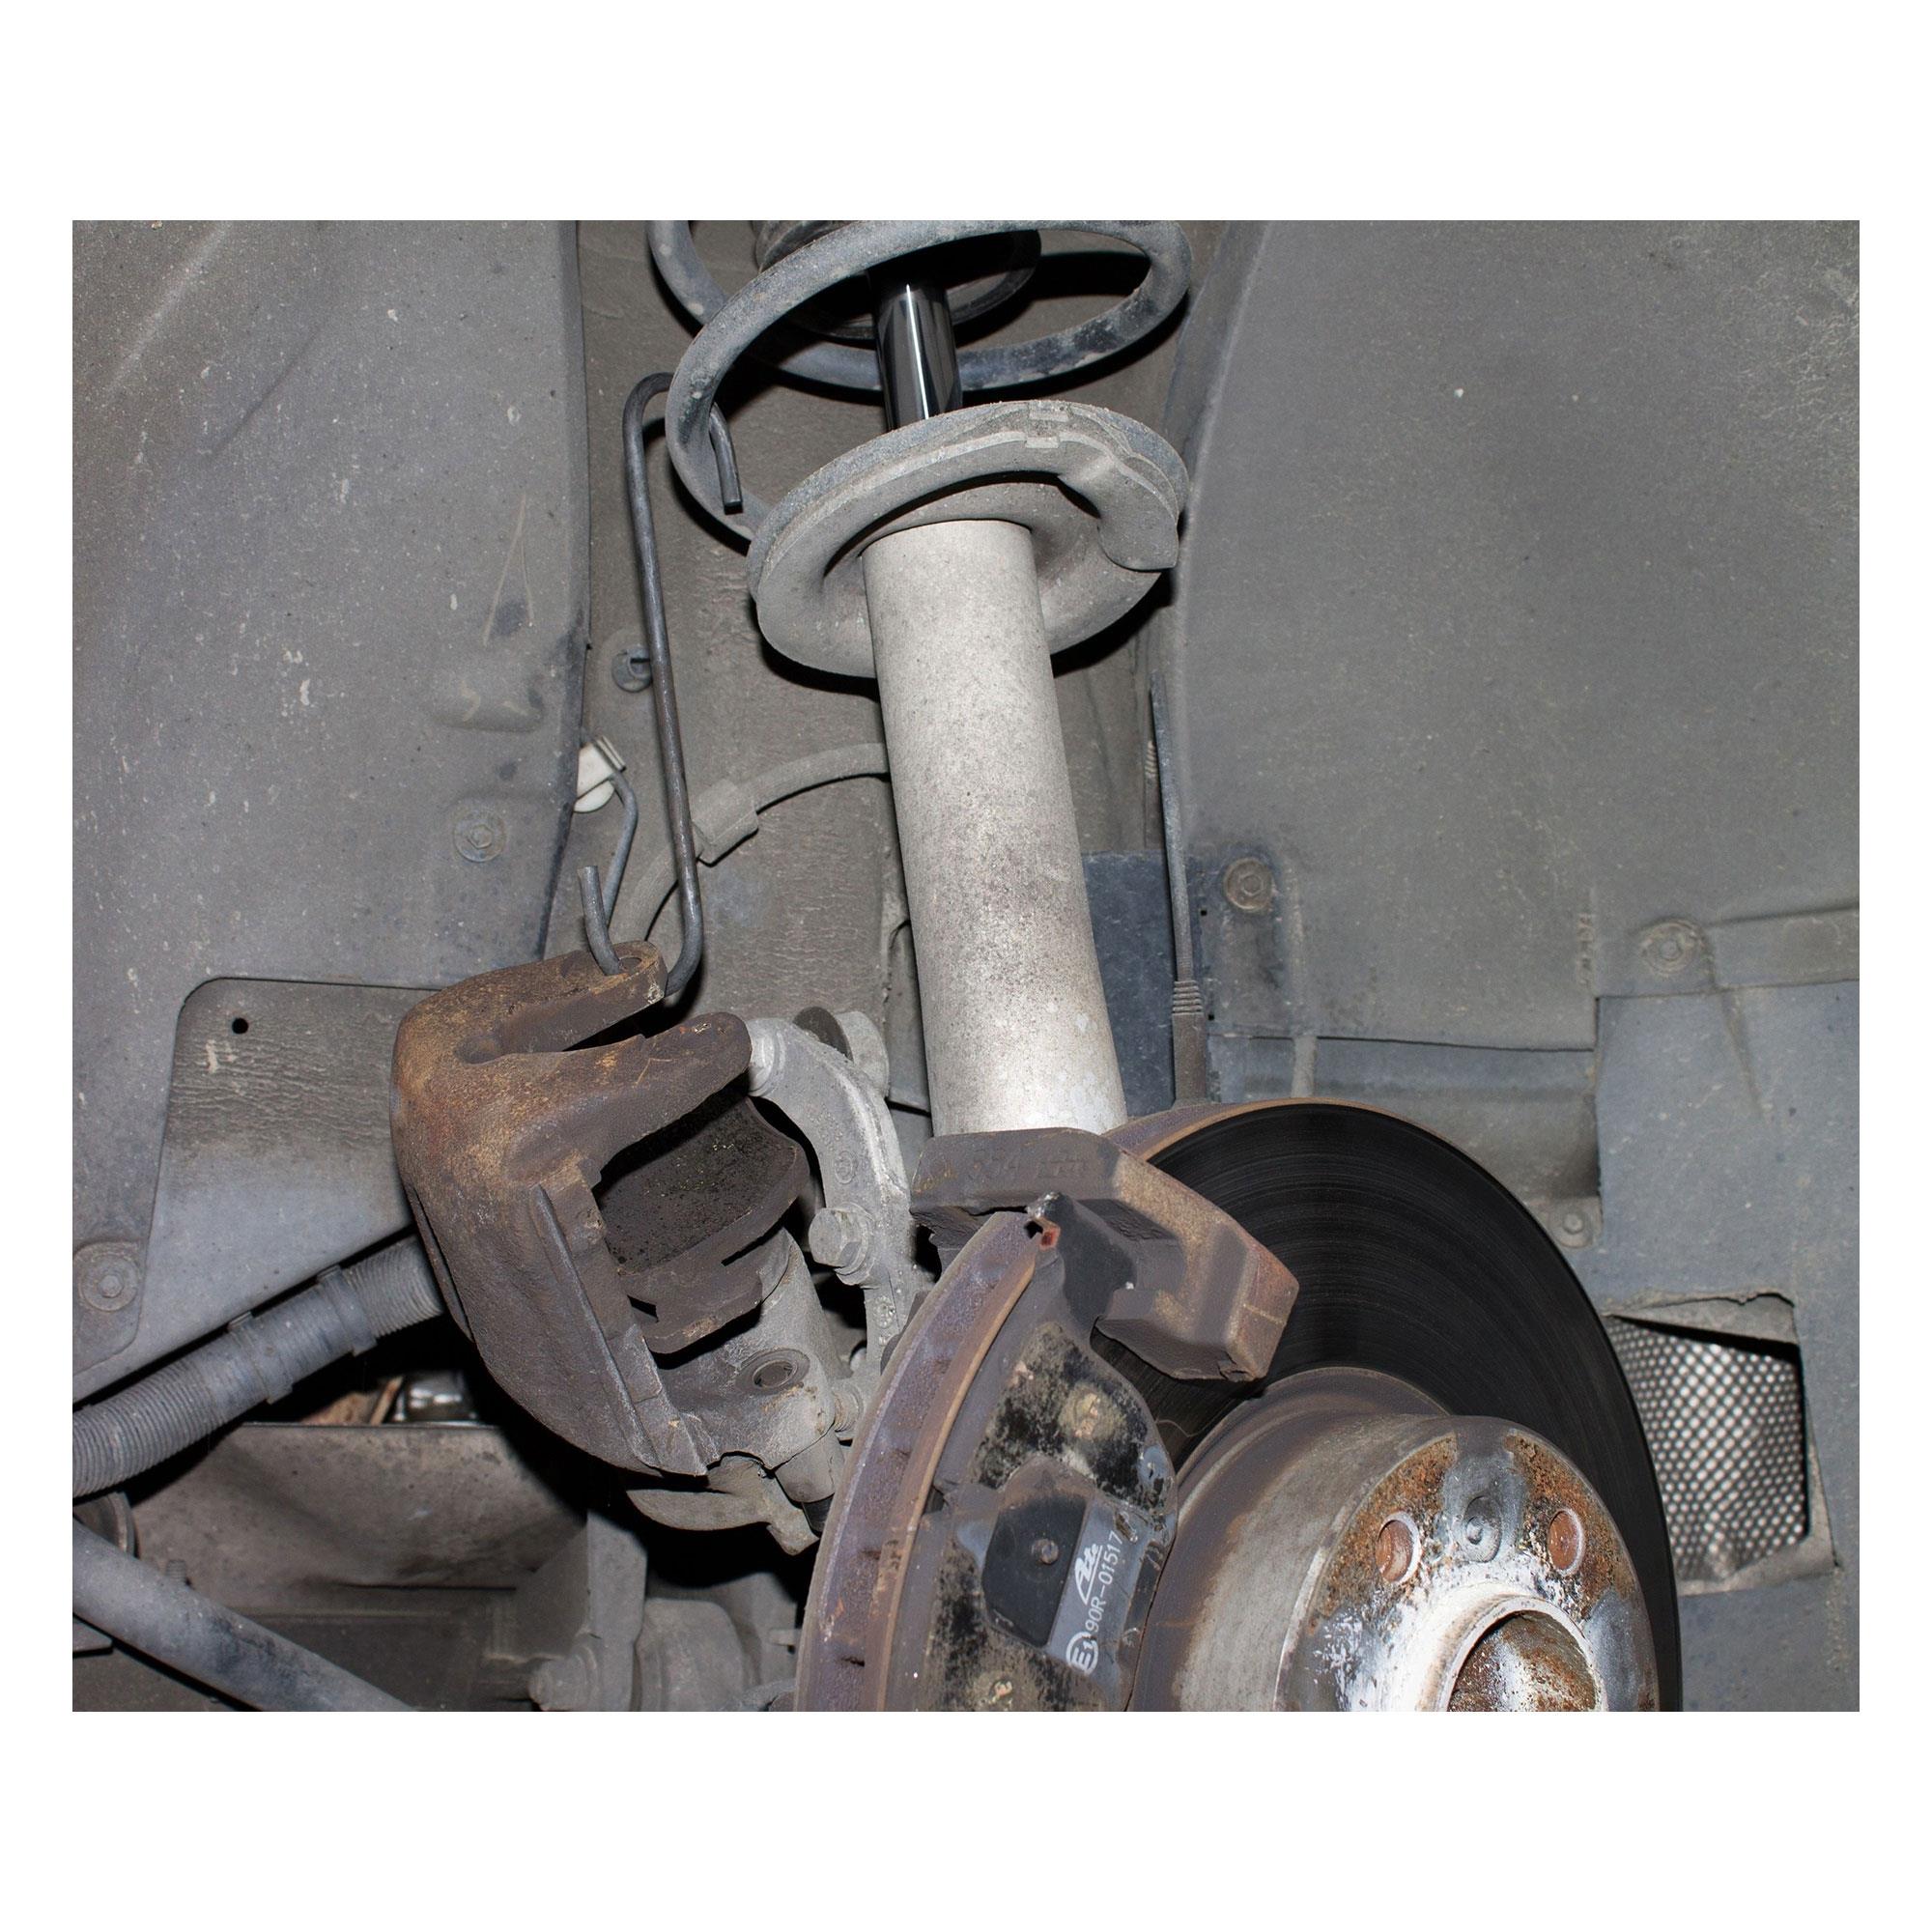 Bremssattel Bremsen Service Haken Satz ca. 190 mm, rot, Bremsendienst, Bremse, Spezialwerkzeug